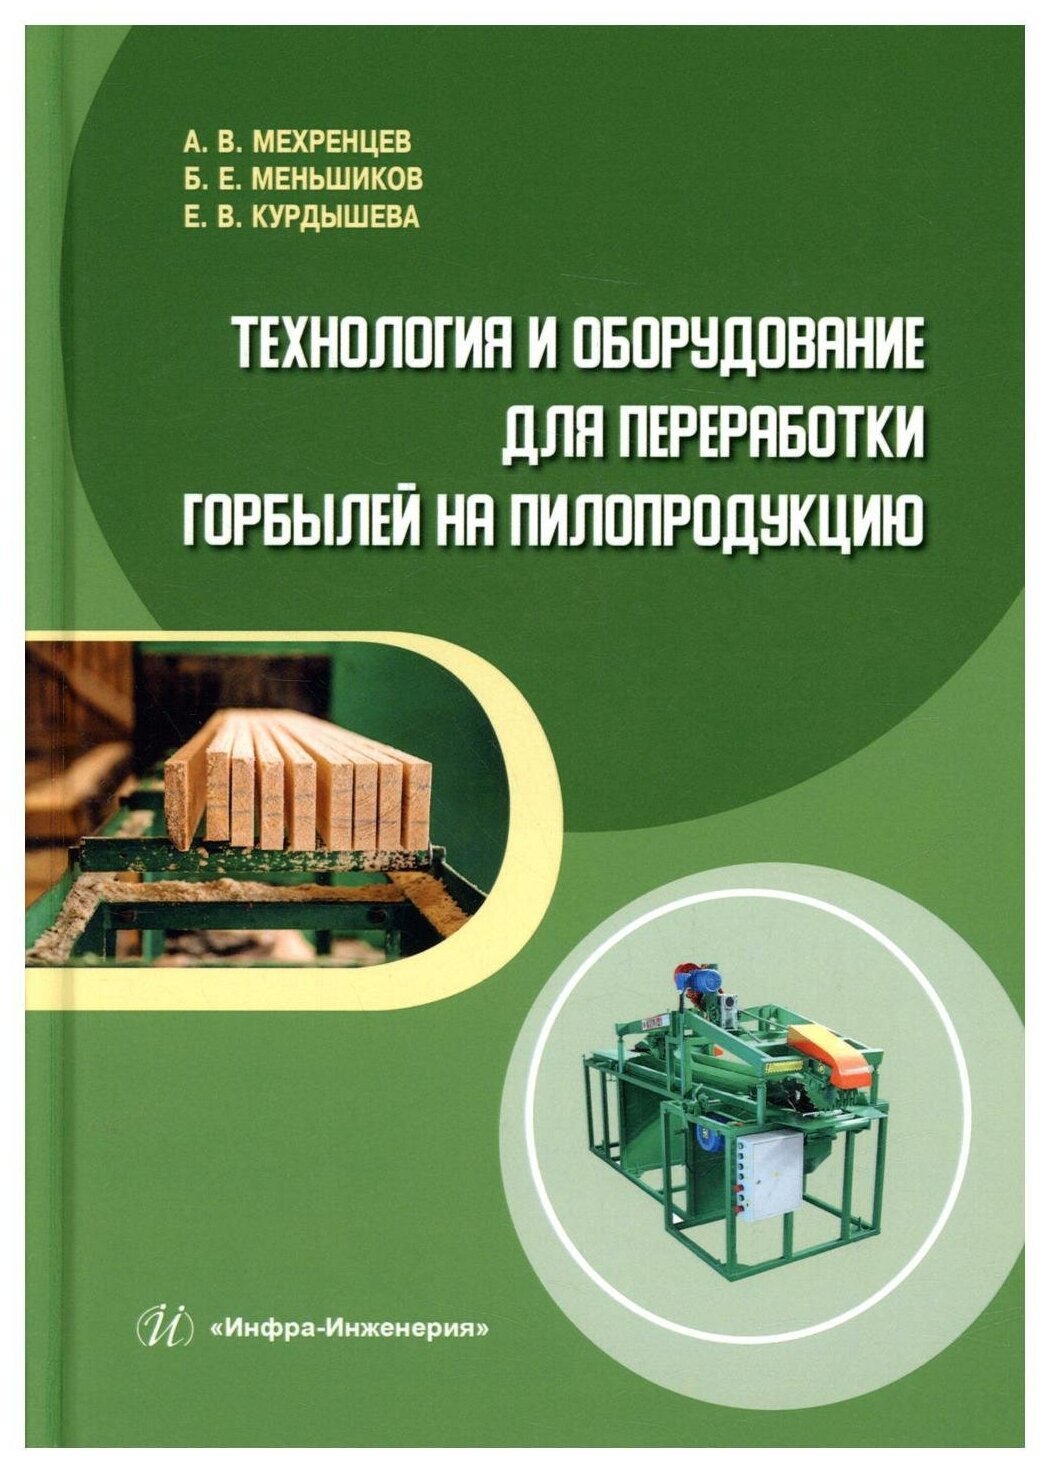 Технология и оборудование для переработки горбылей на пилопродукцию: Учебное пособие